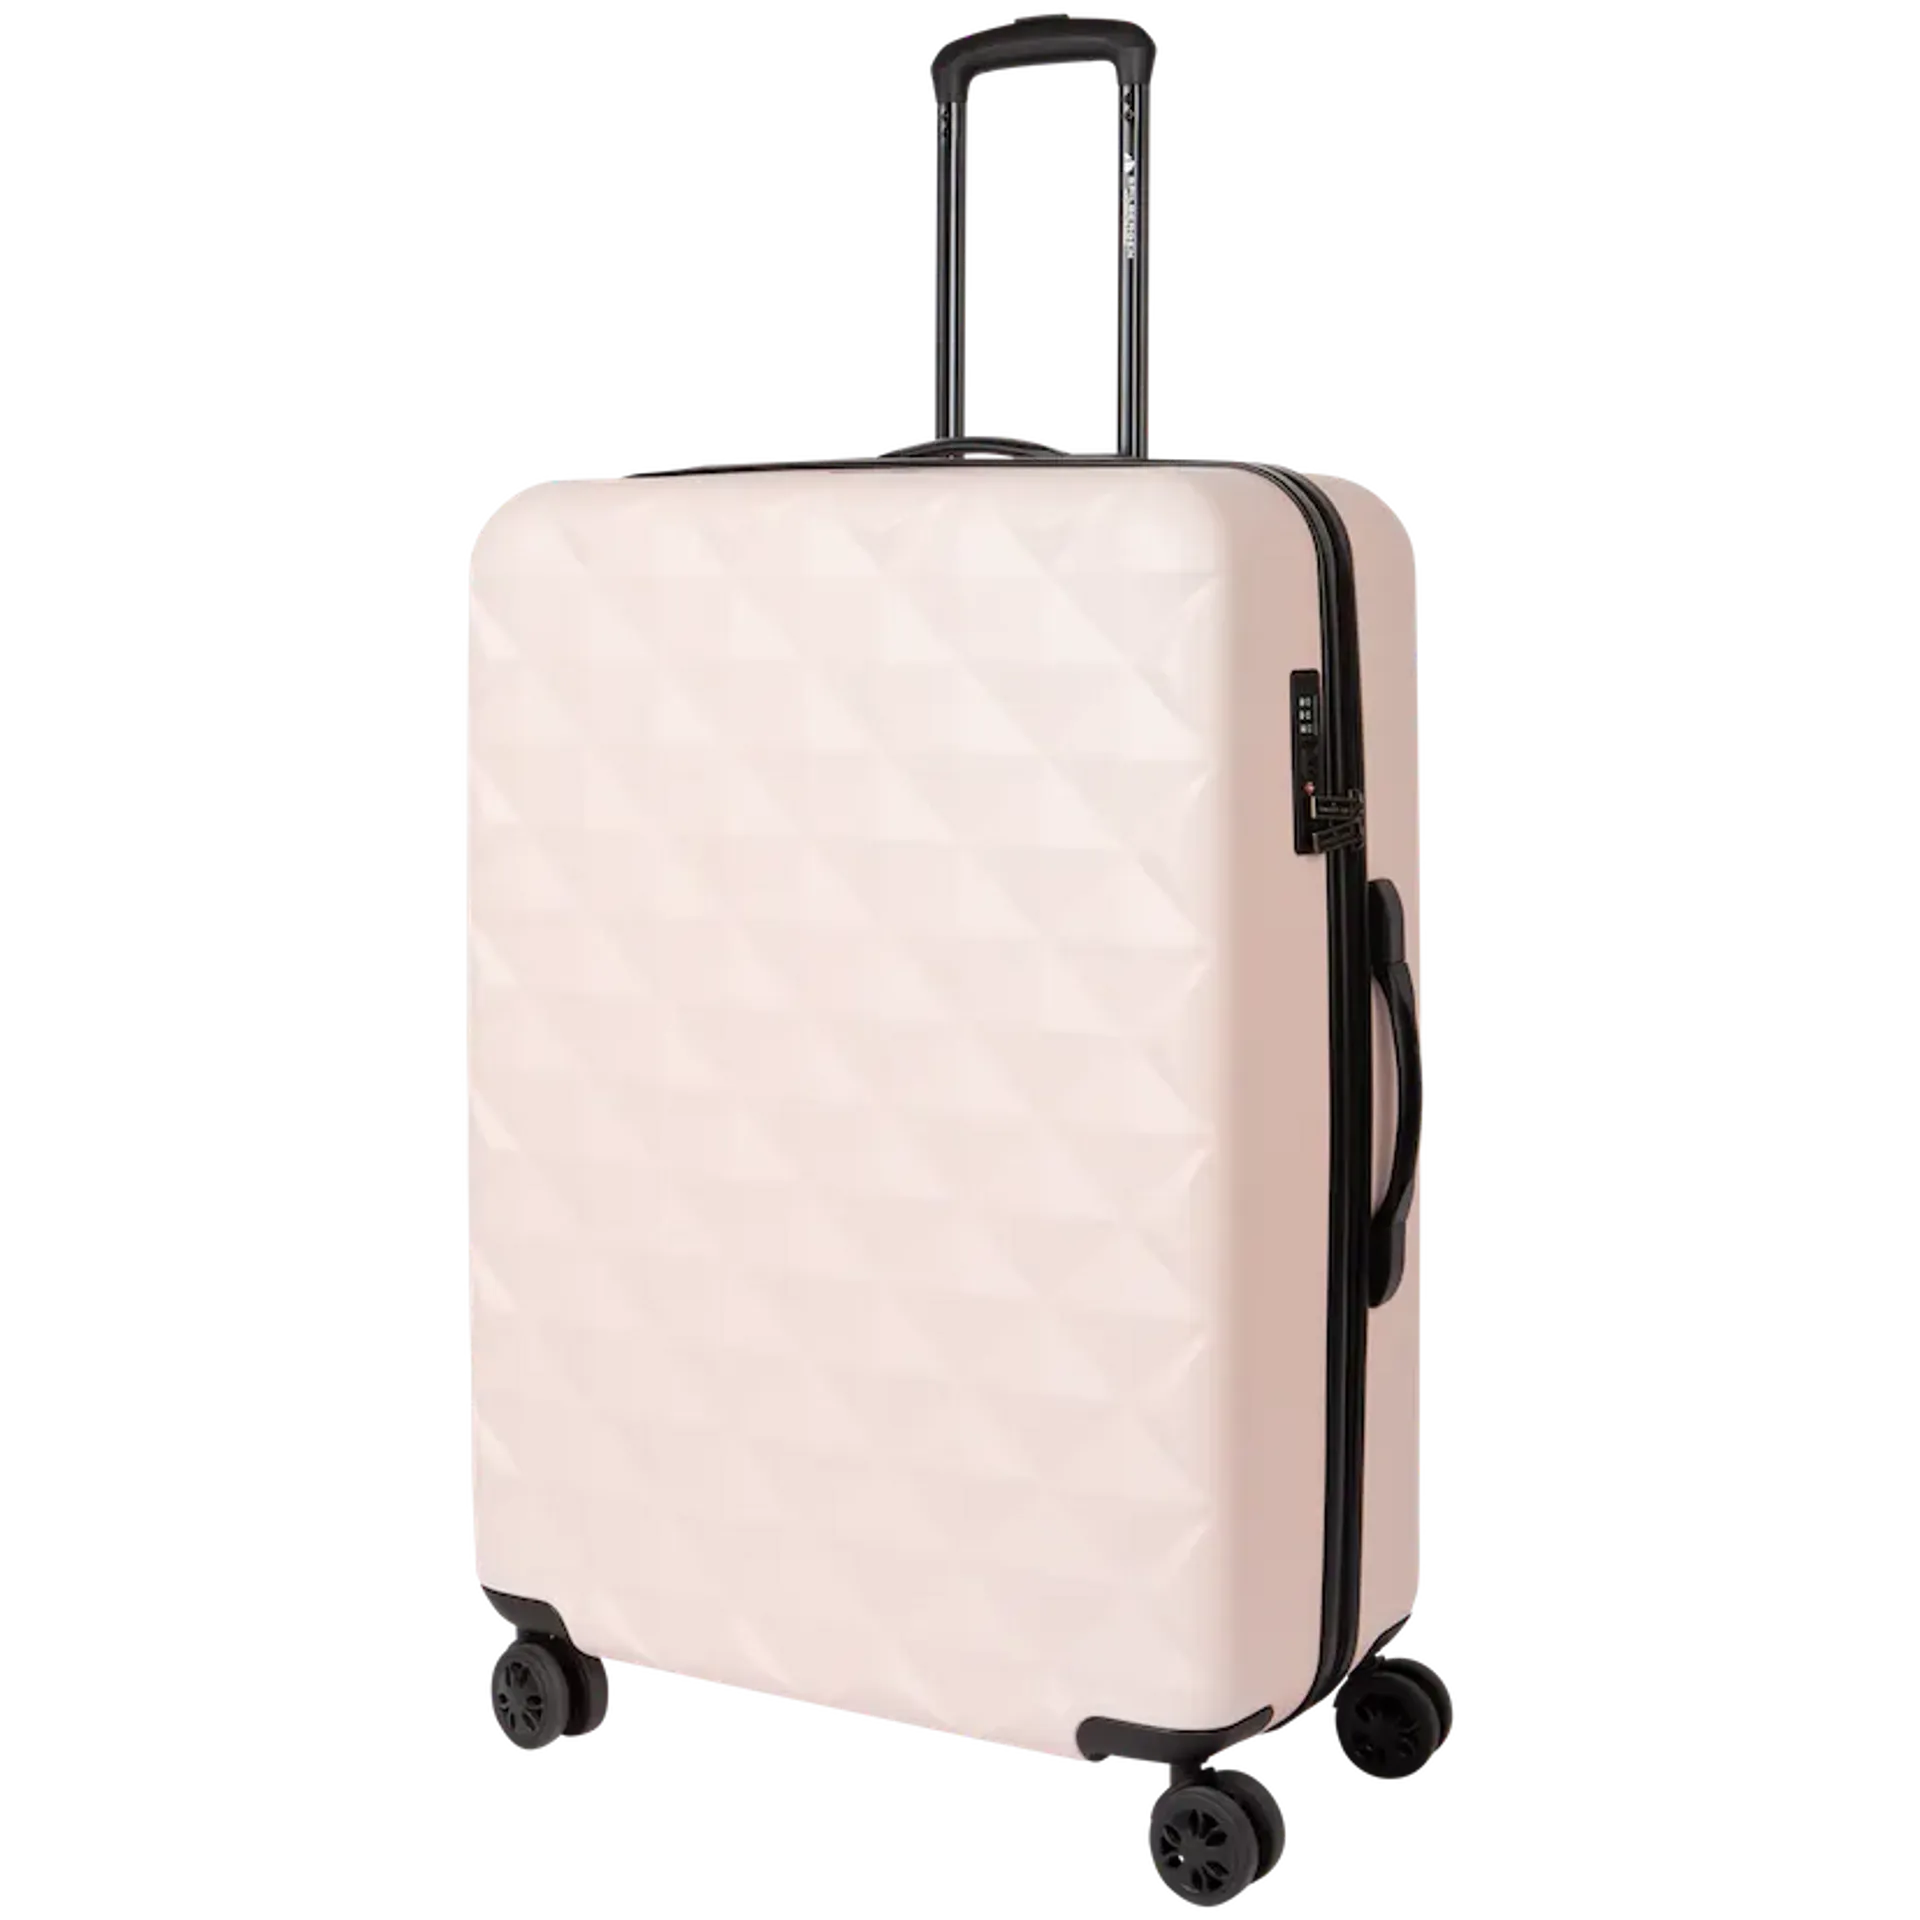 Garderobe toxiciteit Verniel Deze roze koffer van Action is perfect voor je volgende trip